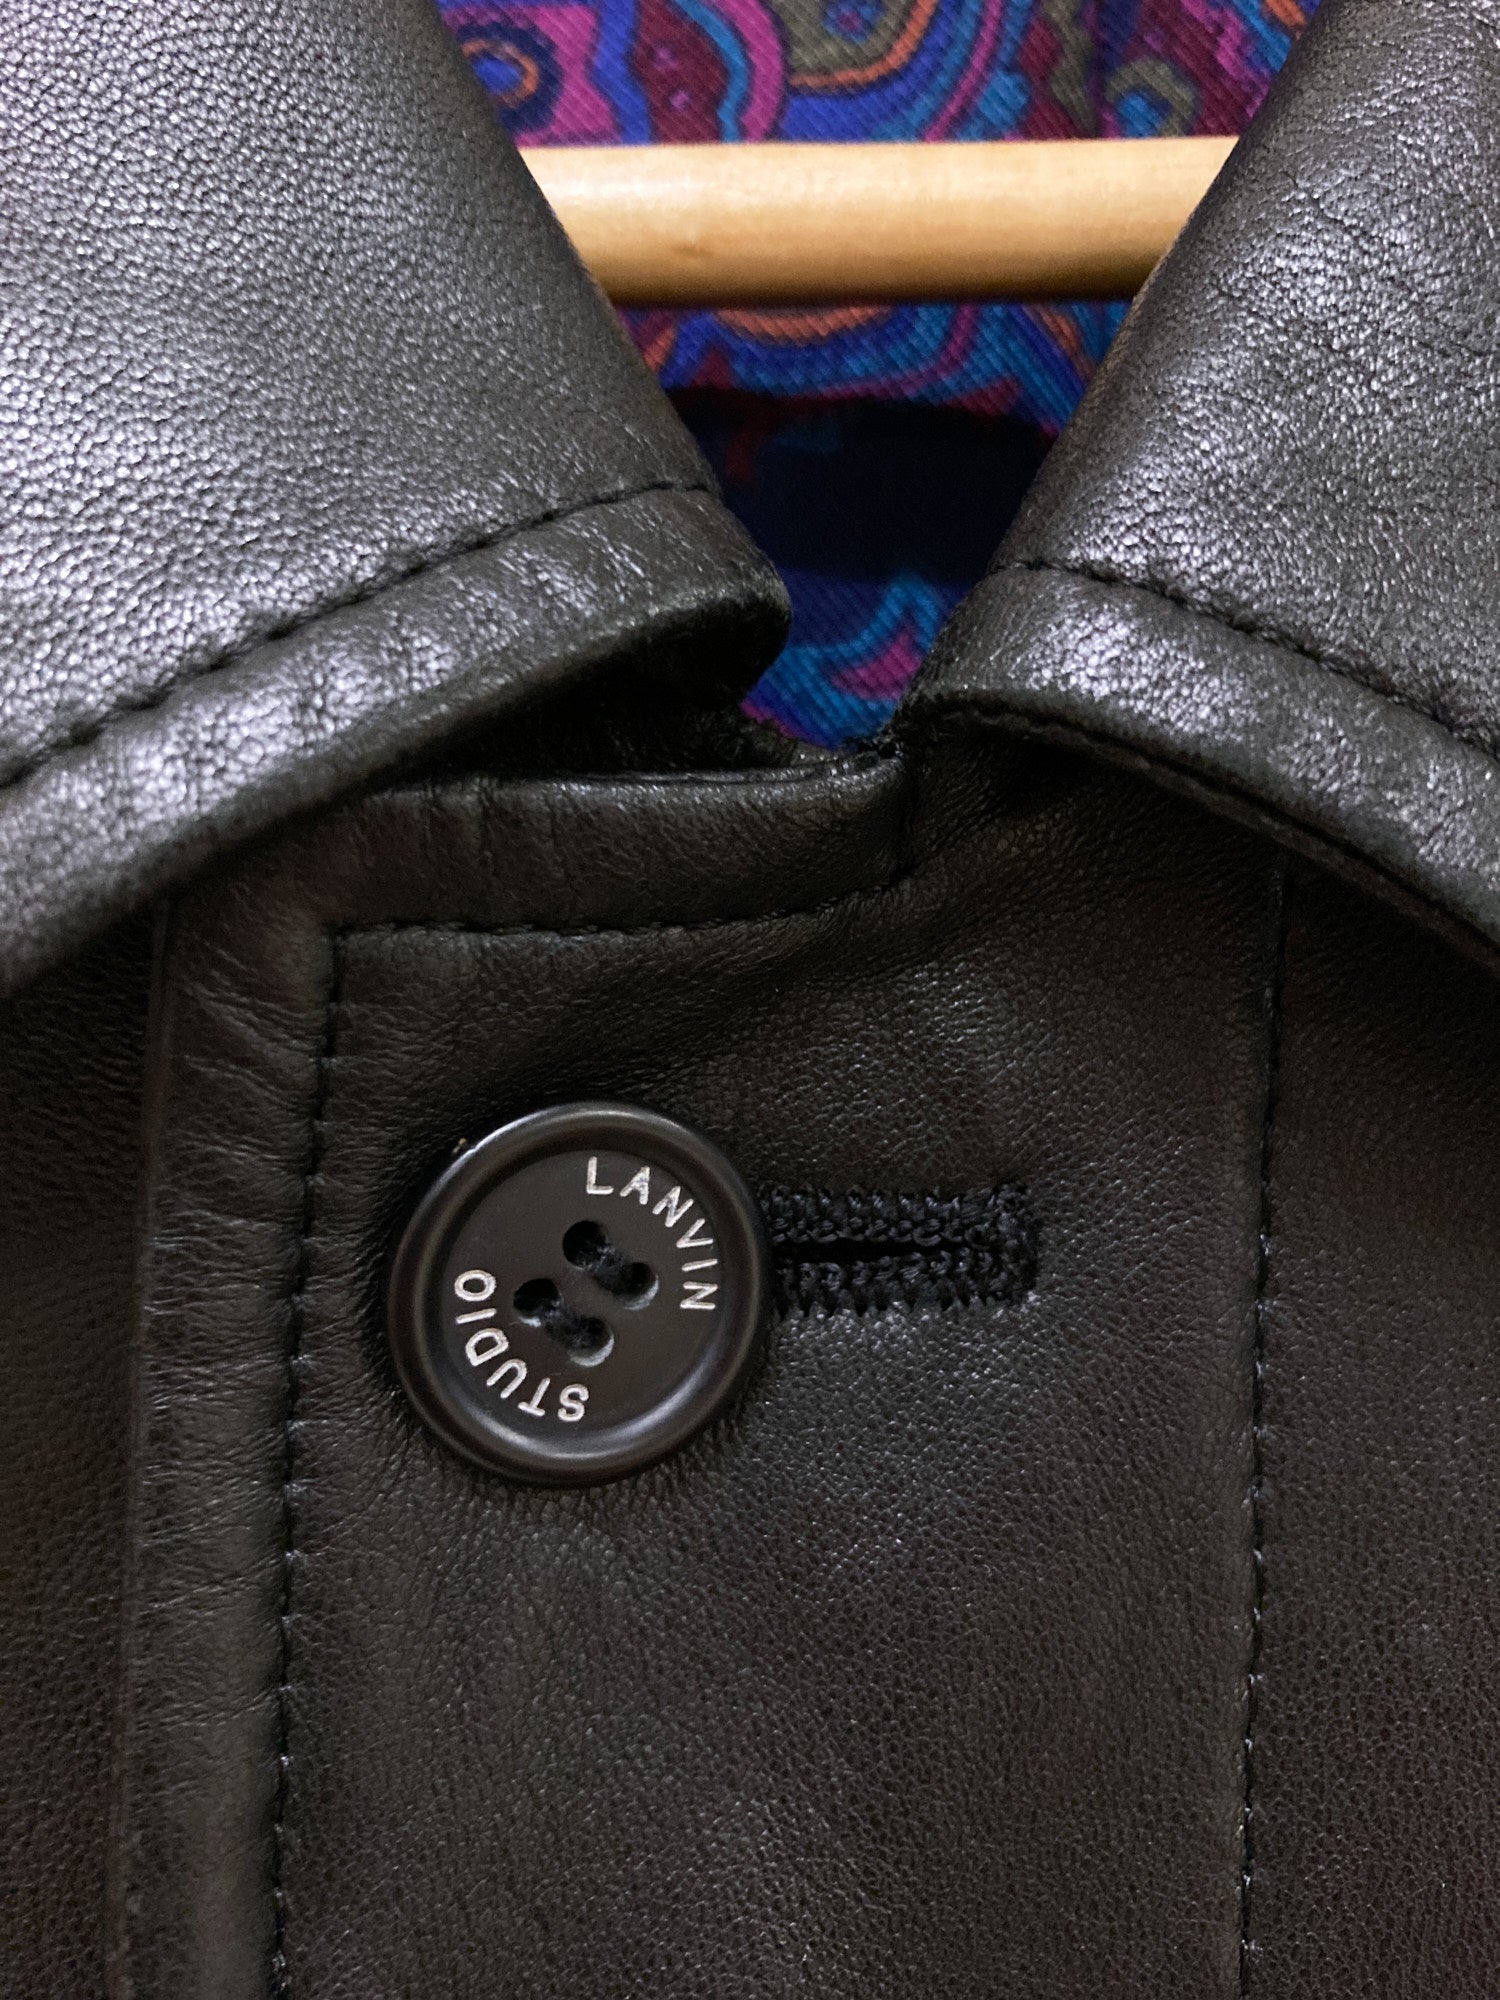 Lanvin Studio 1980s padded black paneled leather jacket - size 50